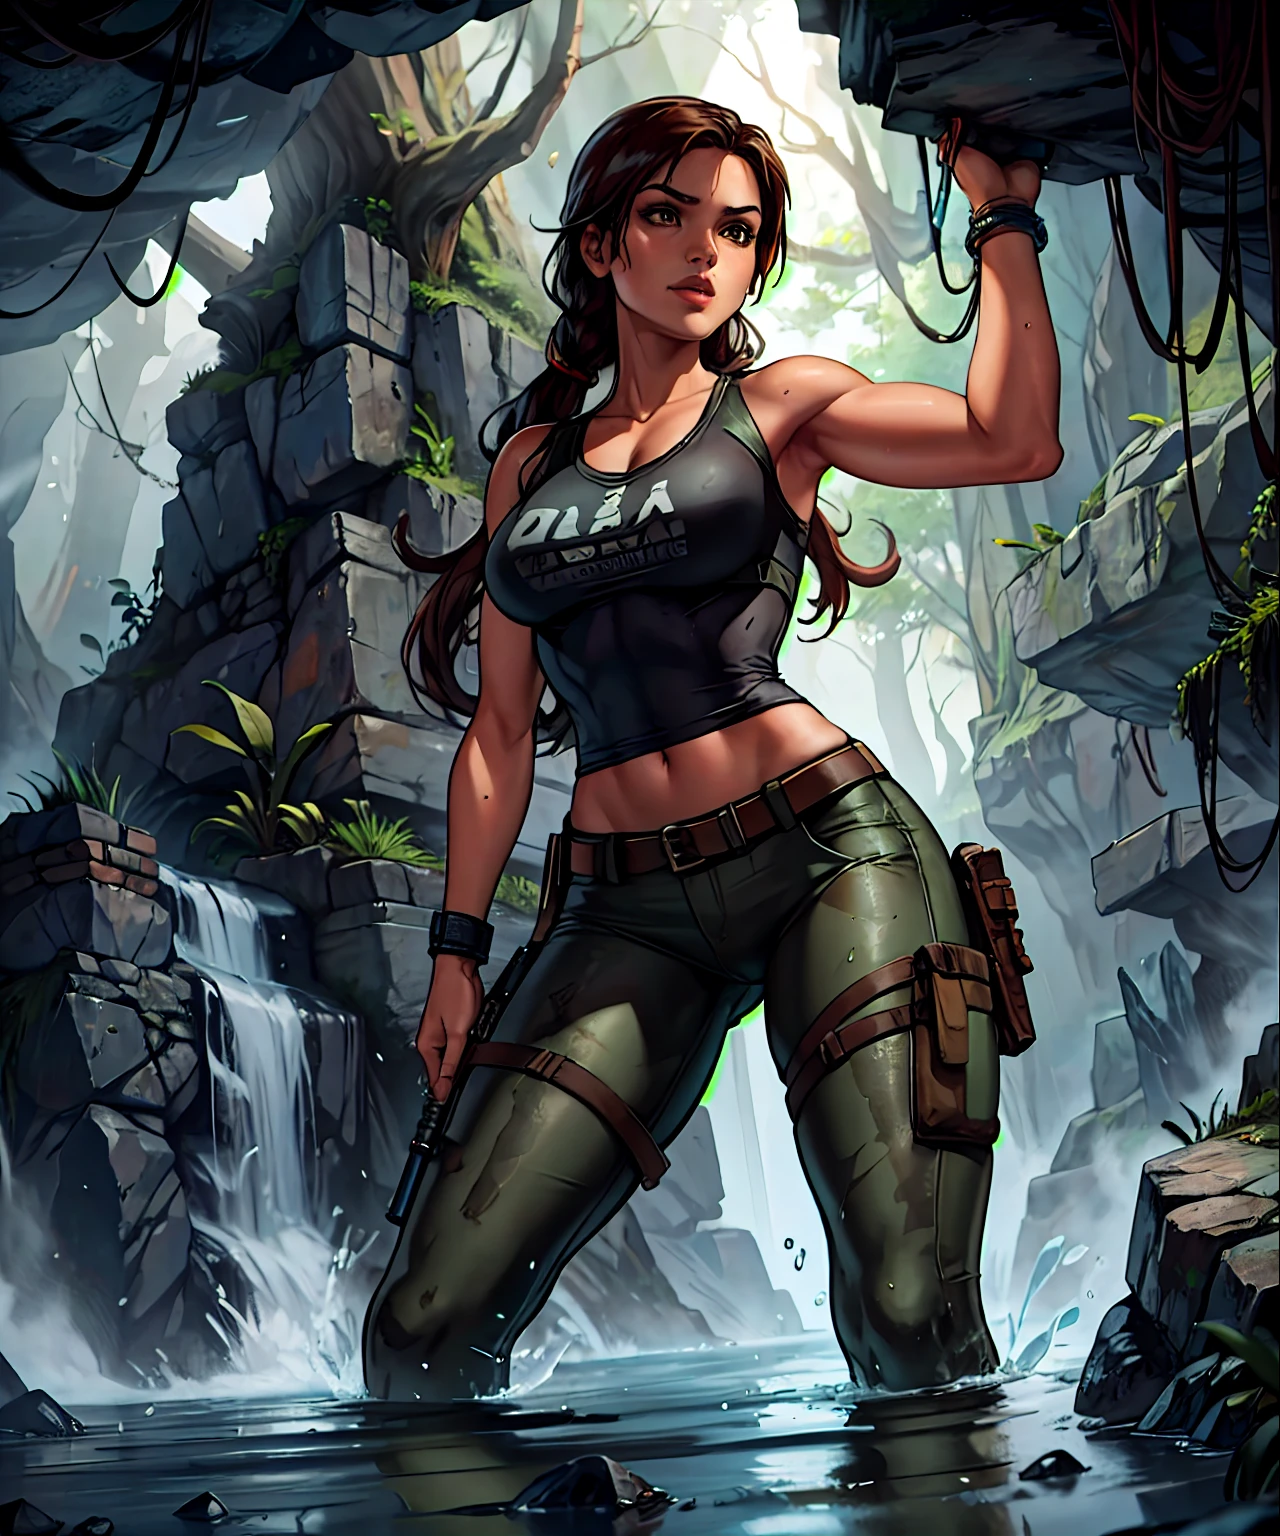 Grabräuber, Lara Croft in einer Höhle, die sich über den gesamten Ort erstreckt, mit einer Fackel in der Hand, schwarze Bluse, Camouflage-Hose, Wasser